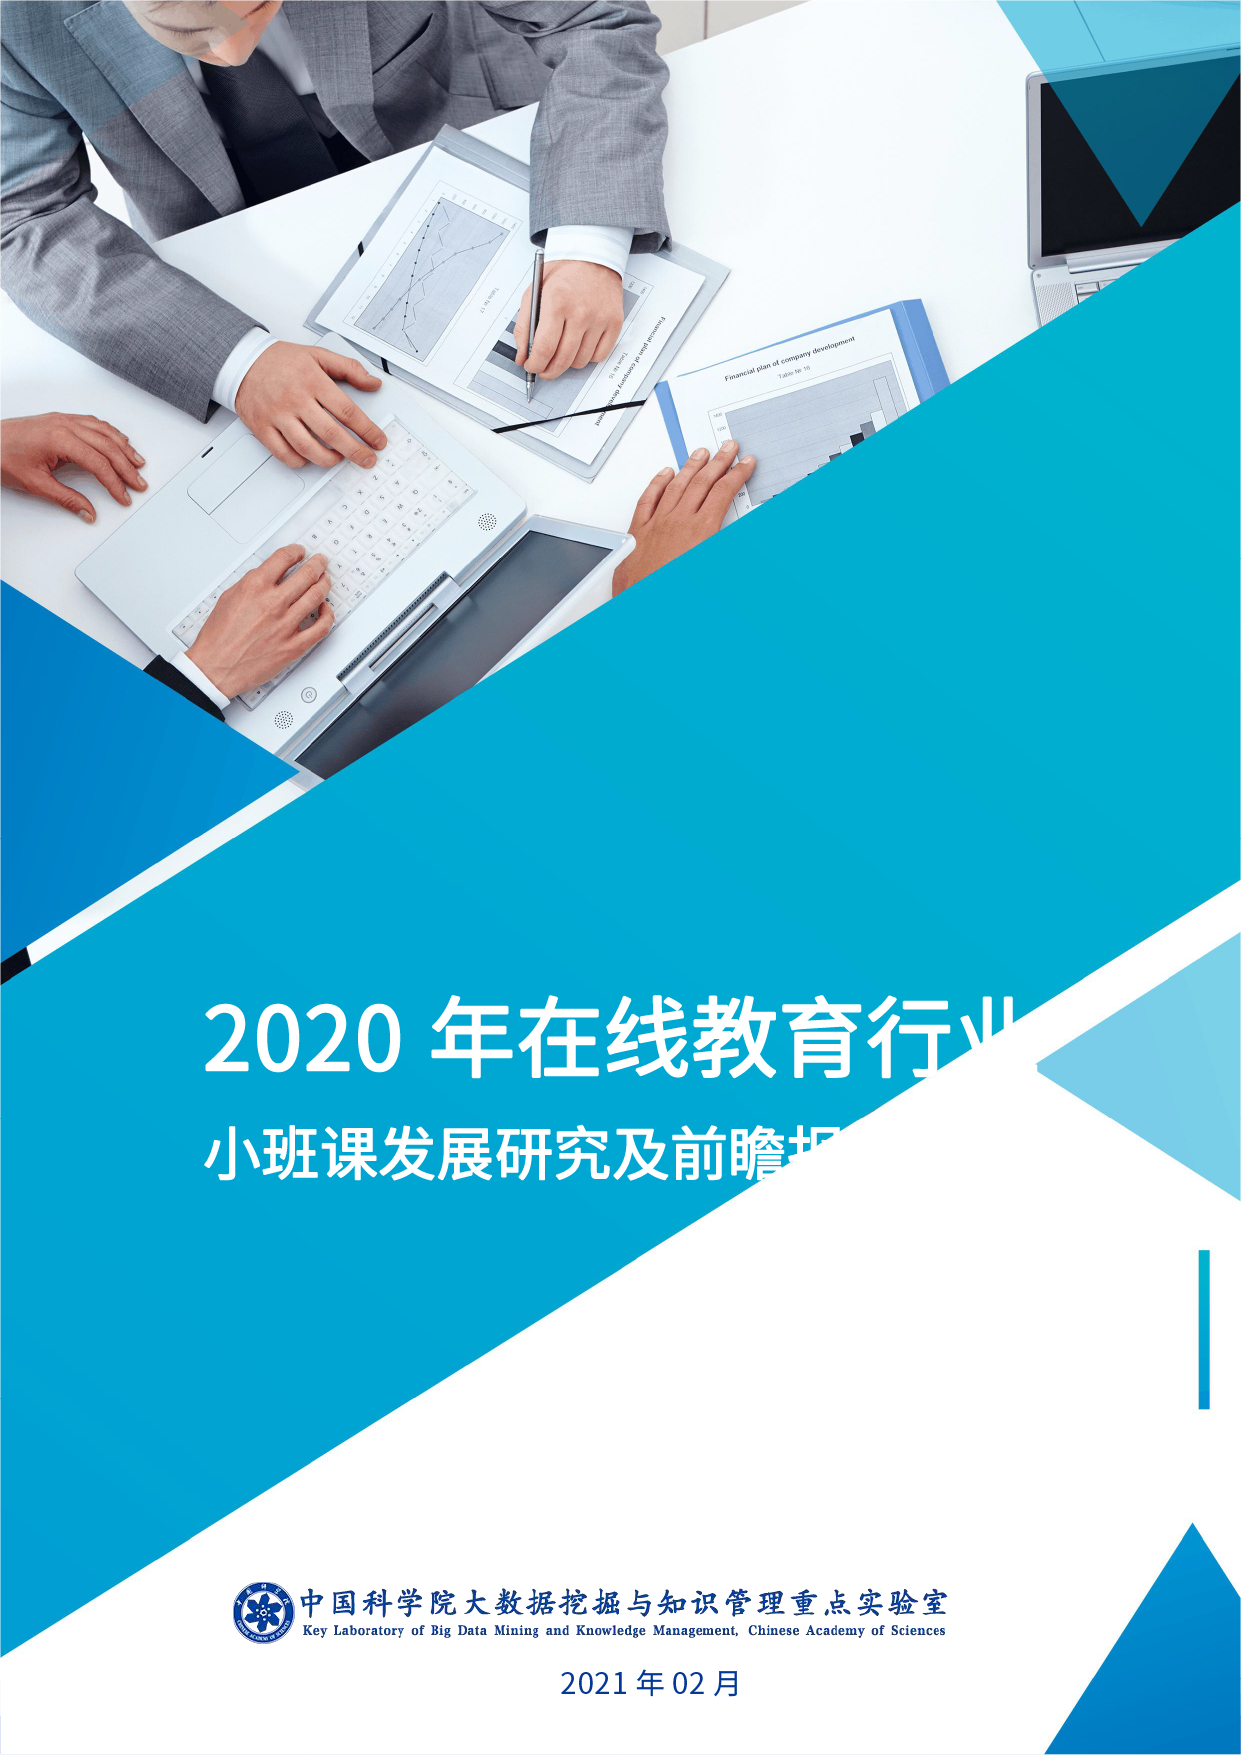 中科院发布《2020 年在线教育行业小班课发展研究及前瞻报告》